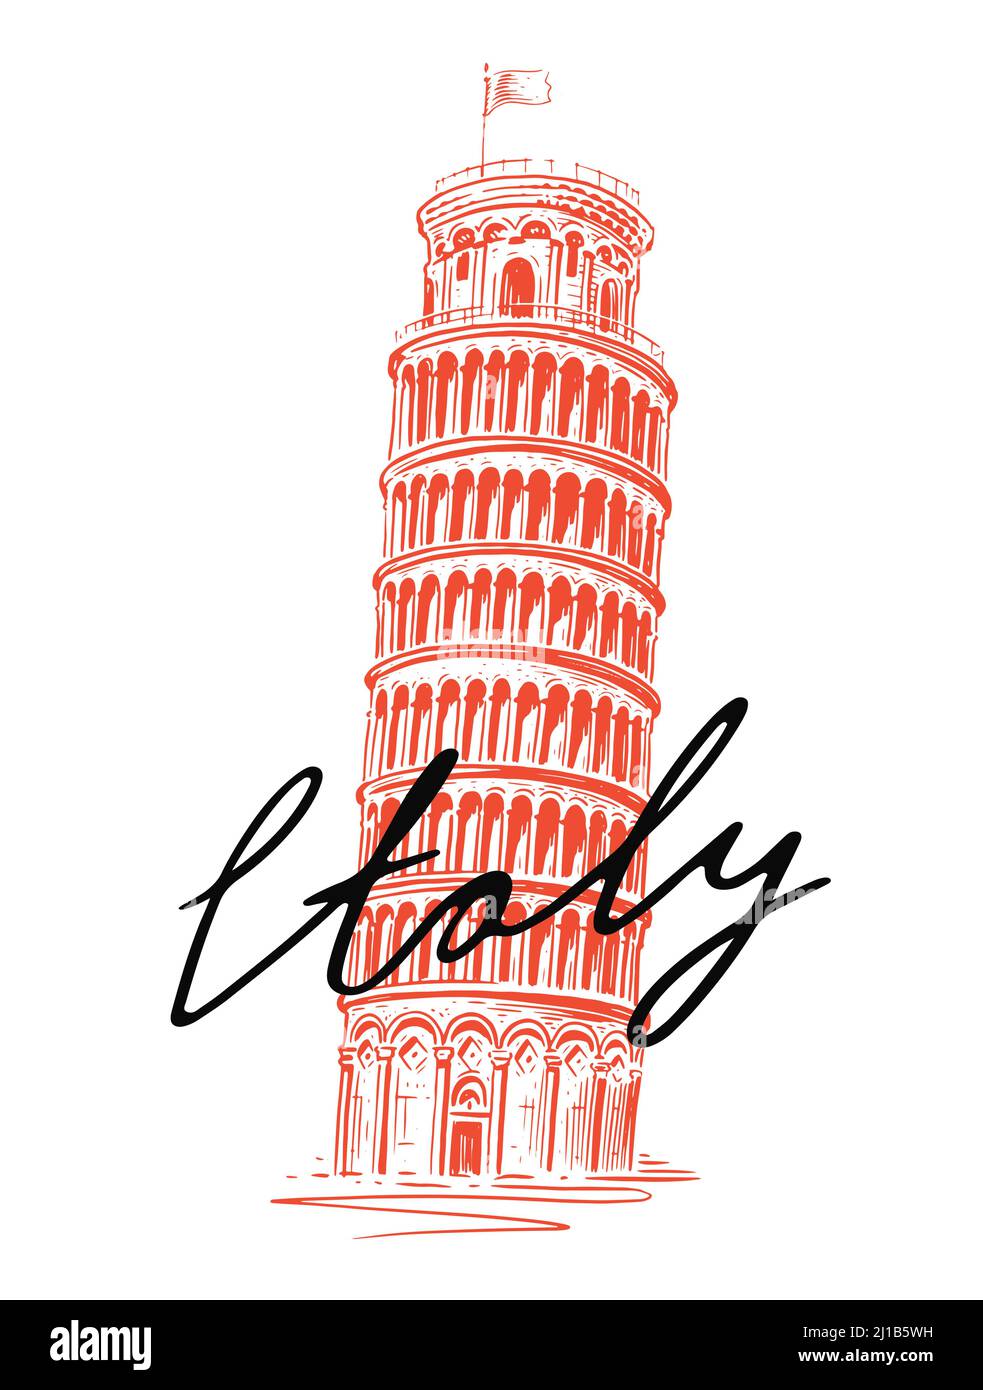 Schizzo della Torre Pendente Italiana di Pisa. Punto di riferimento per l'Italia. Illustrazione vettoriale vintage Illustrazione Vettoriale